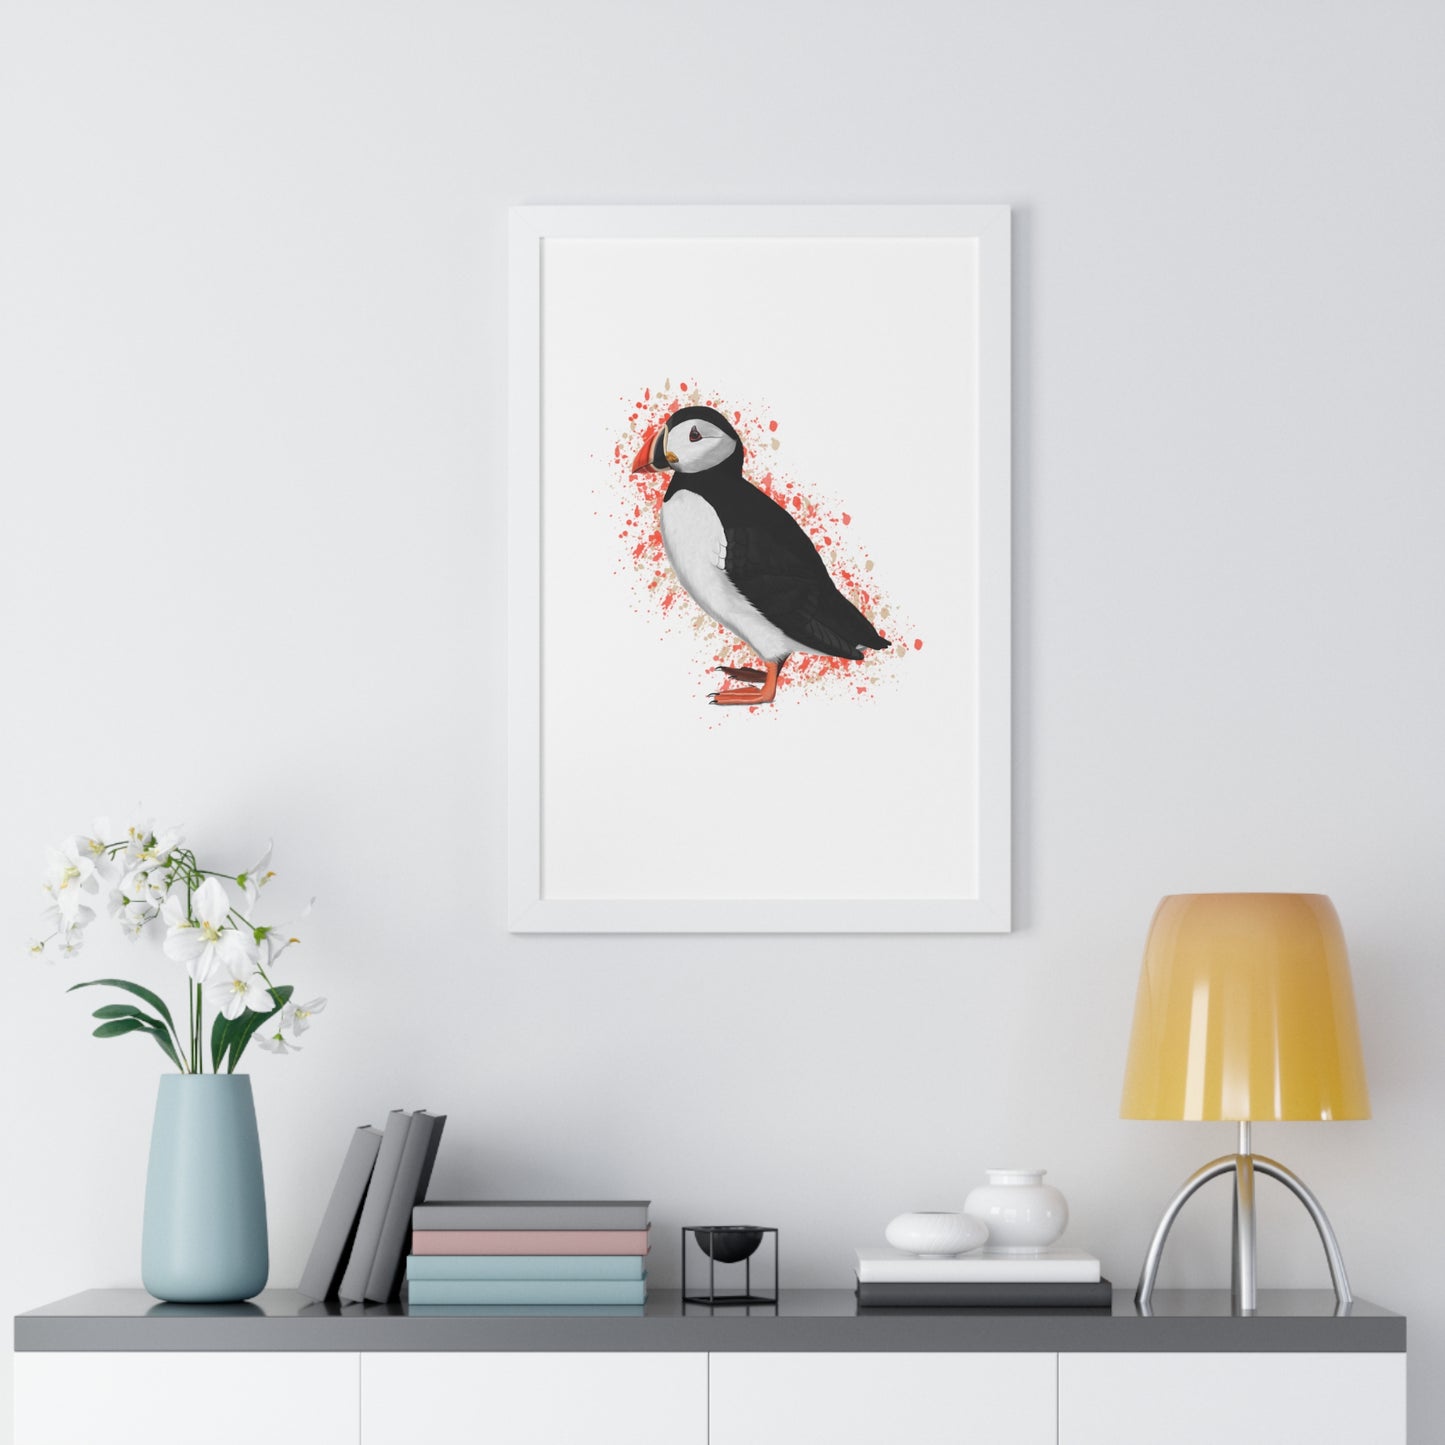 Puffin Bird Framed Poster